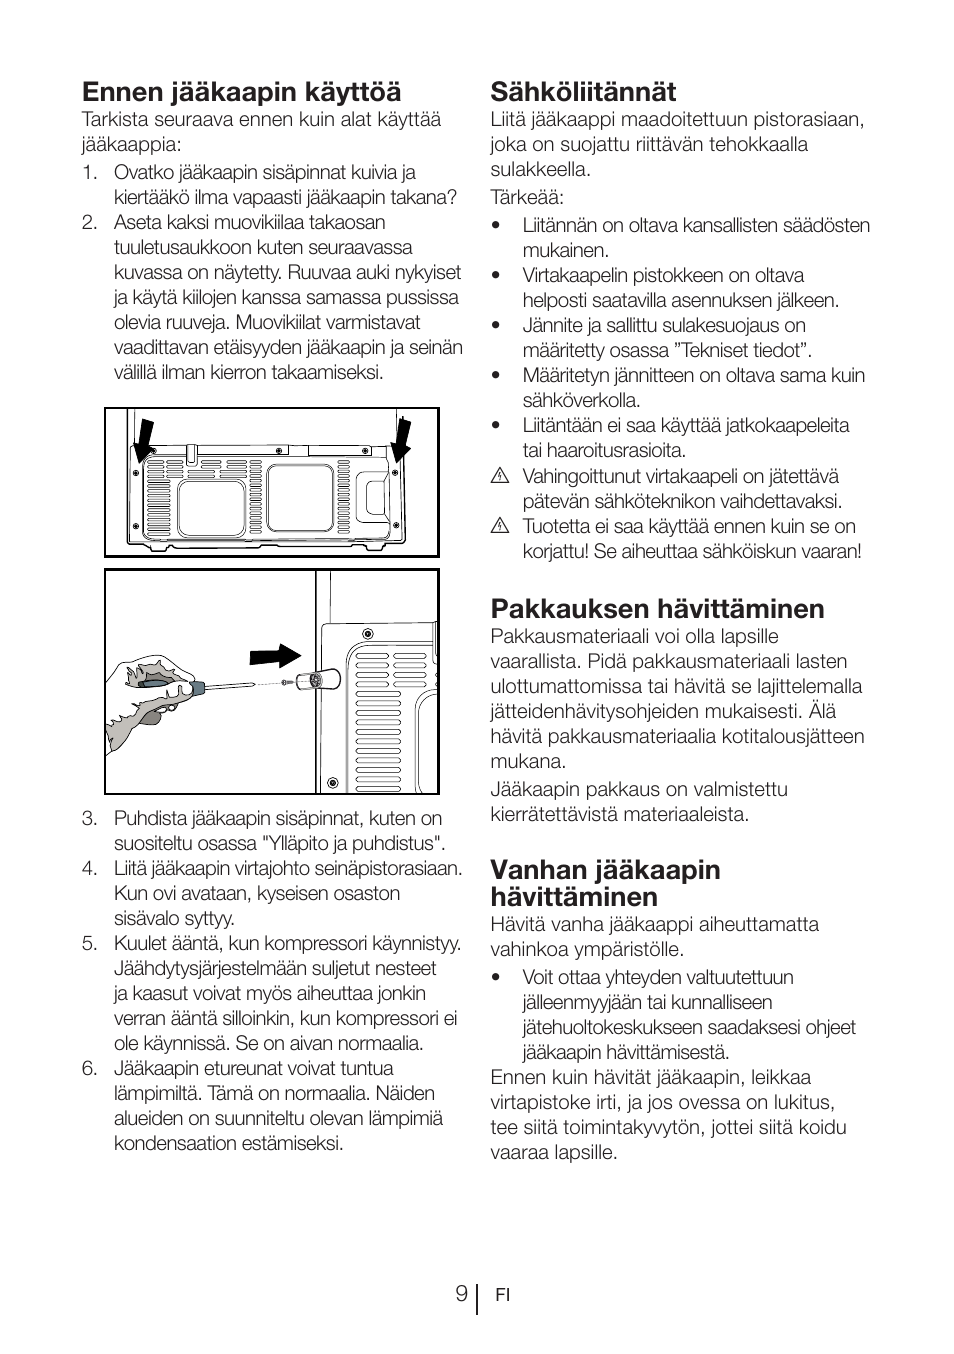 Ennen jääkaapin käyttöä, Sähköliitännät, Pakkauksen hävittäminen | Blomberg  KQD 1250 X A++ User Manual | Page 300 / 358